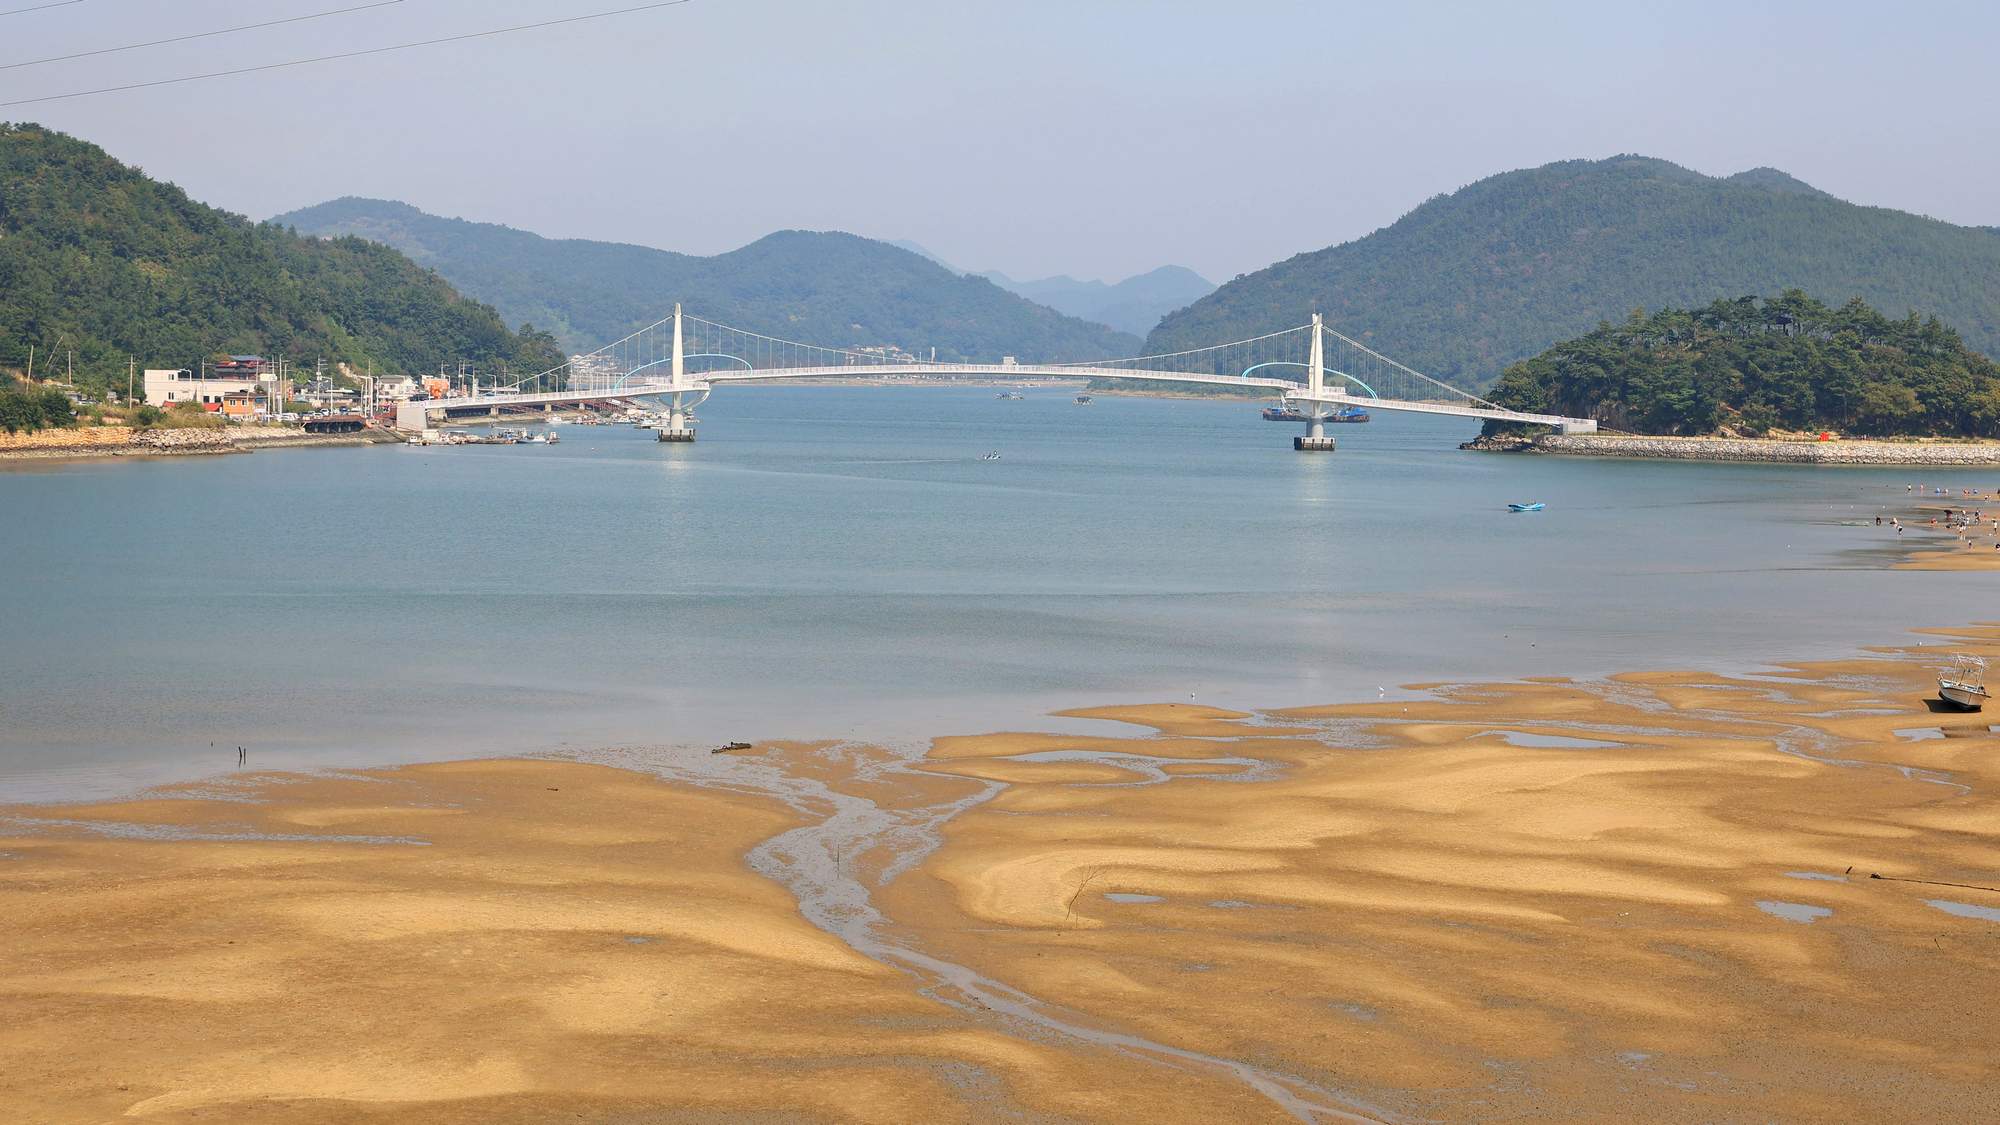 Seomjingang Bike Path - Gokseong Gwangyang - Baealdo Waterfront Park Bridge Island and Short